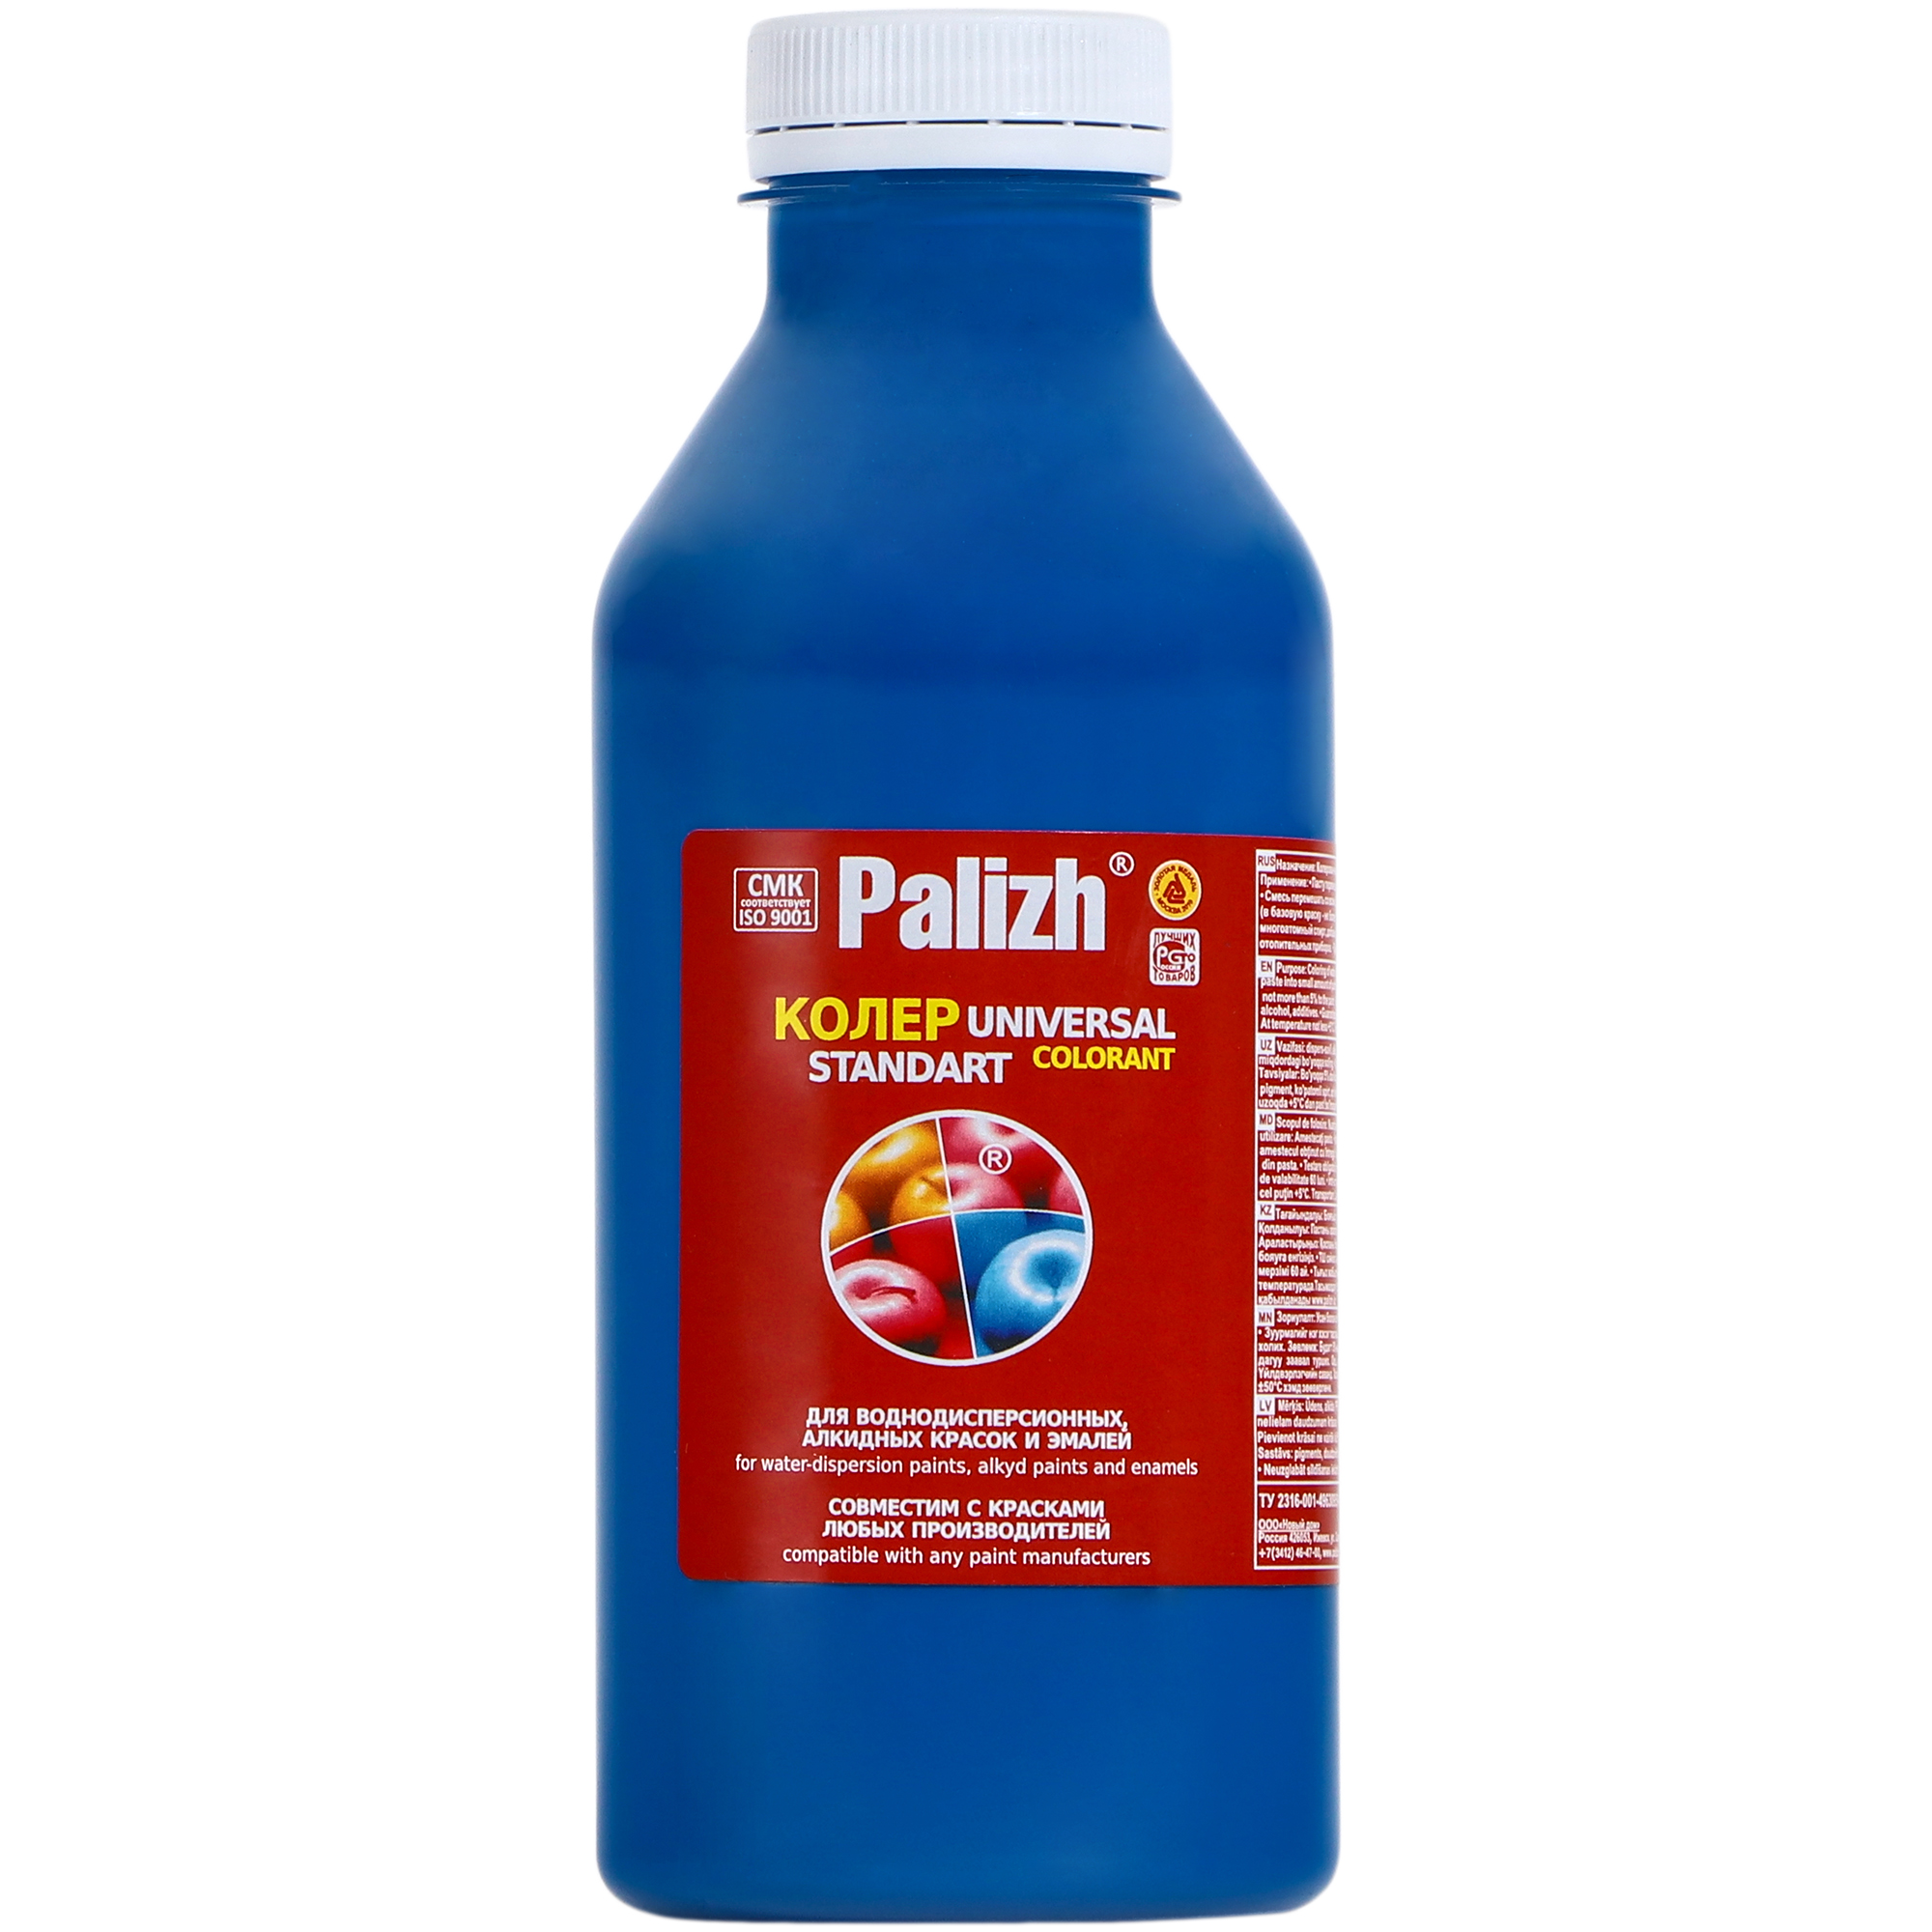 Паста универсальная колеровочная Palizh голубой - 450 мл паста универсальная колеровочная palizh салатный 450 мл